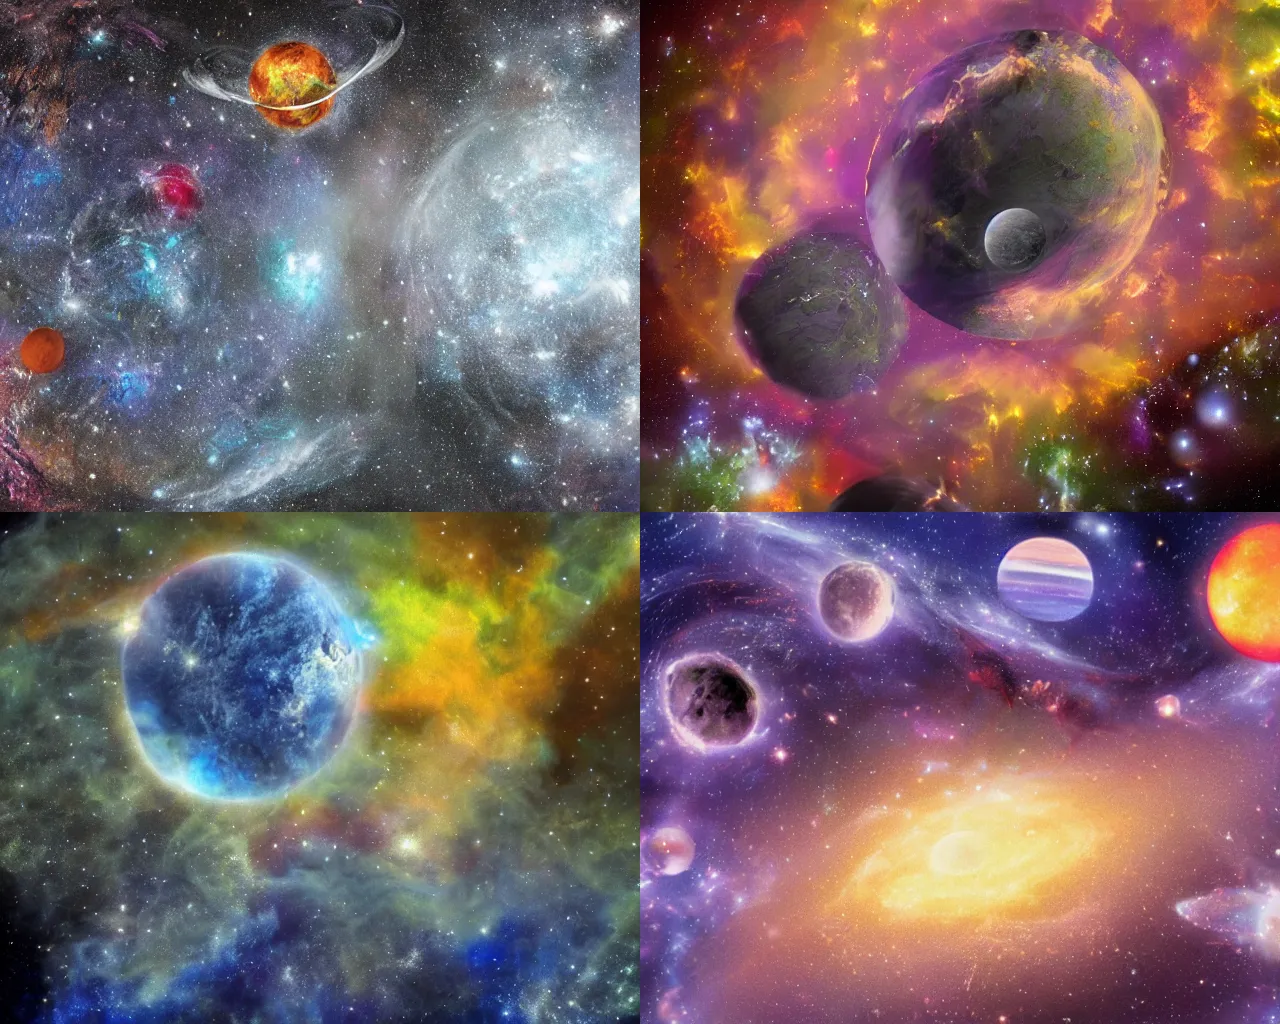 Image similar to nebulous planetary bodies fantasy